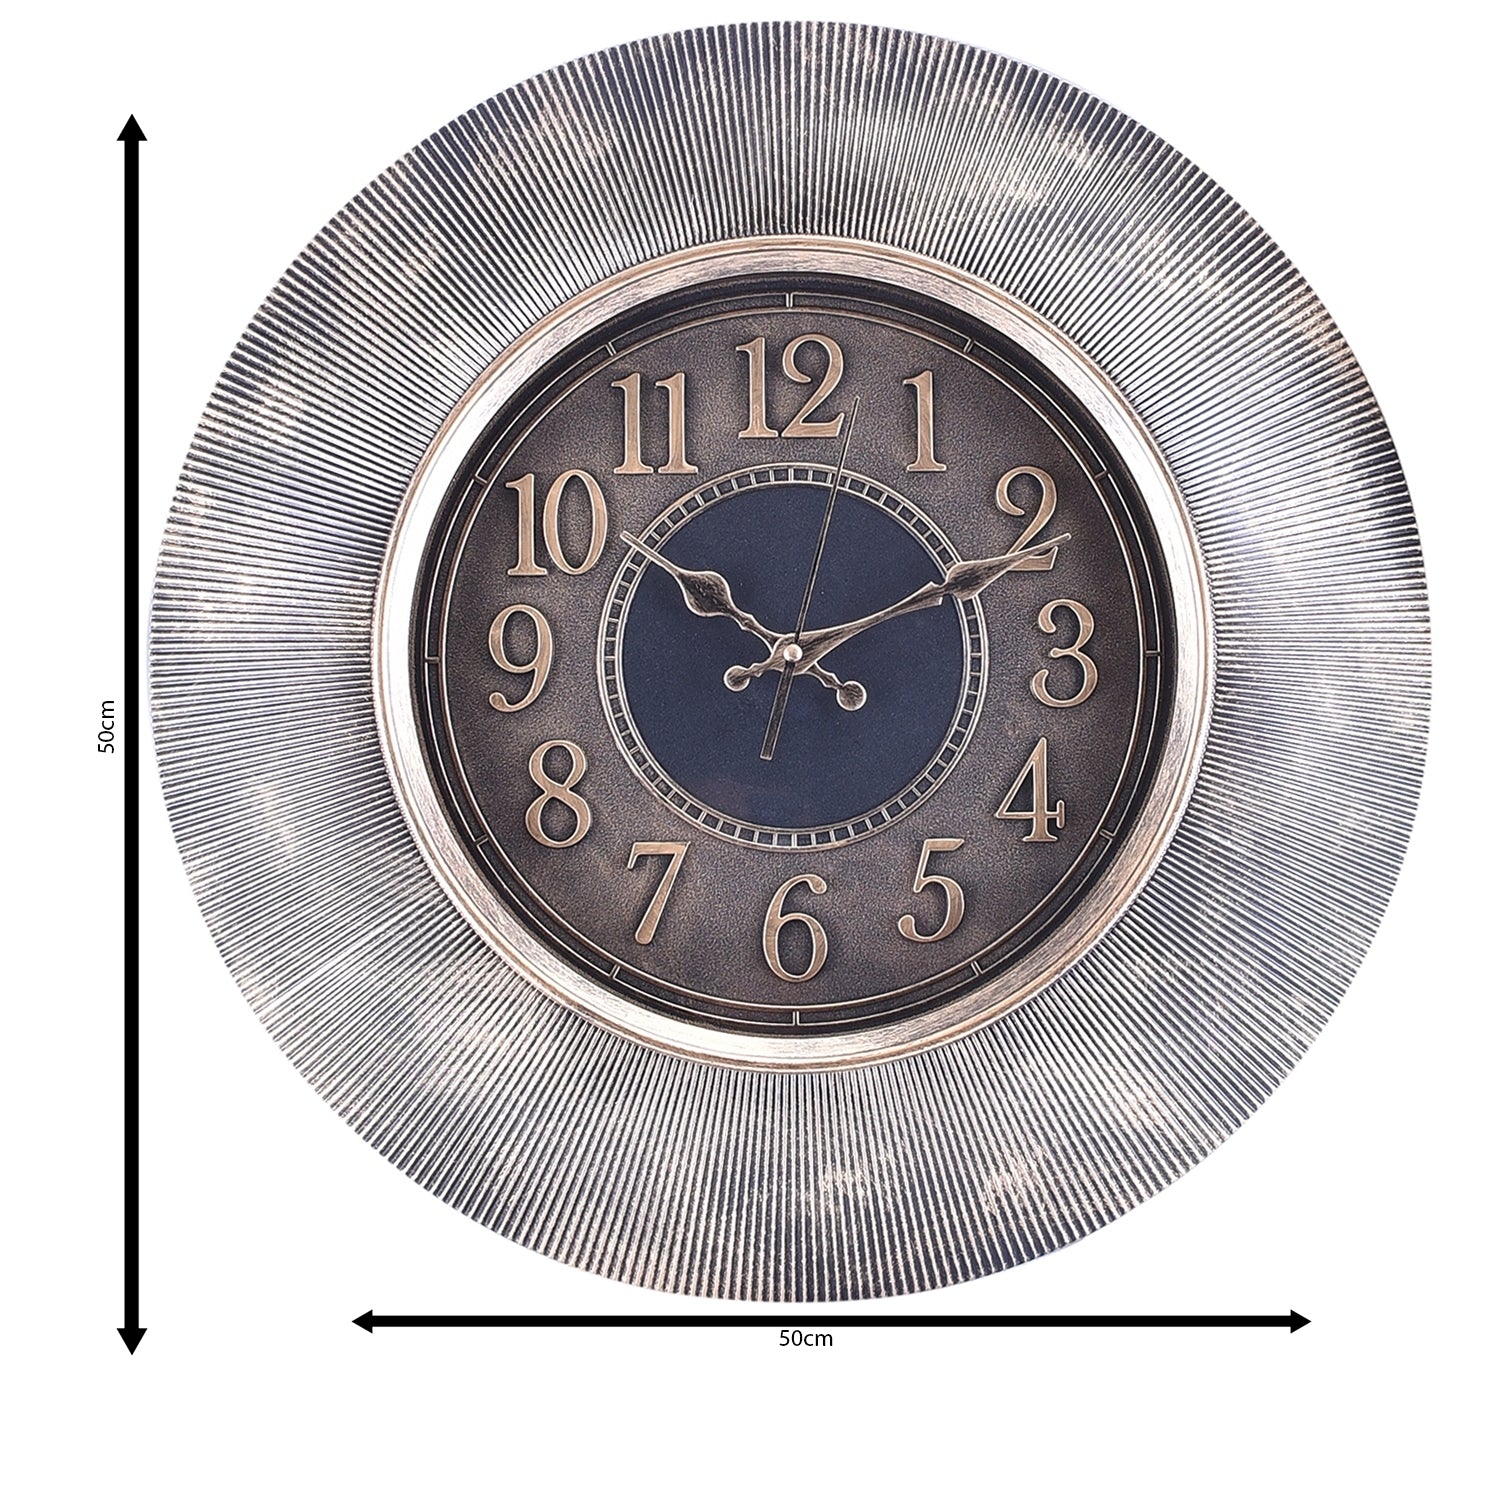 Premium Antique Design Analog Wall Clock 13